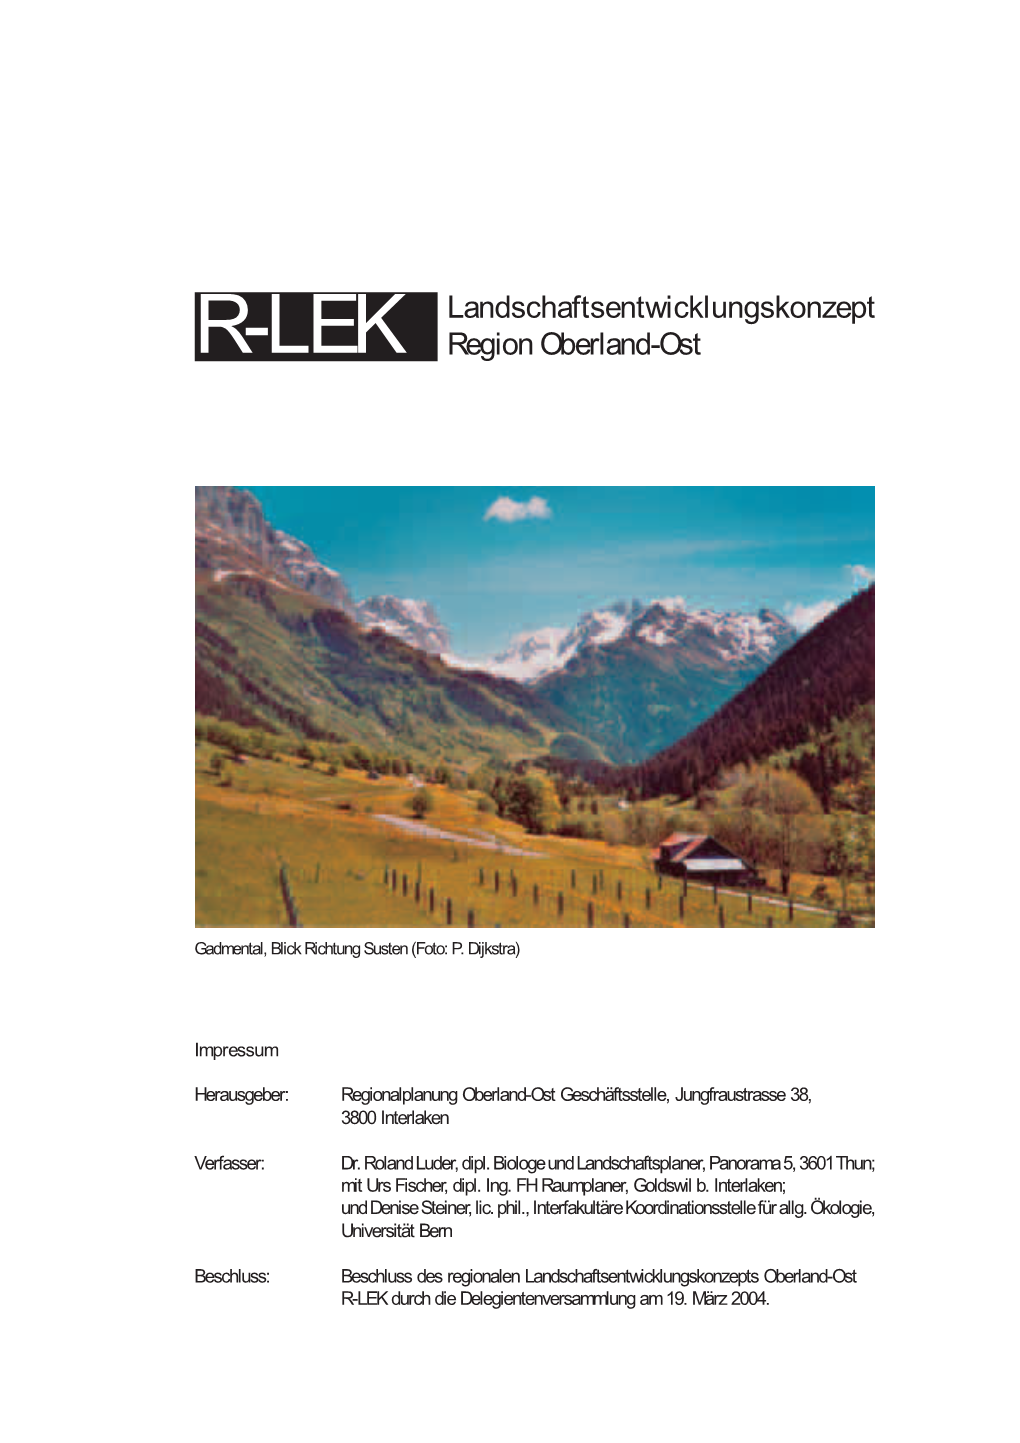 R-LEK Landschaftsentwicklungskonzept